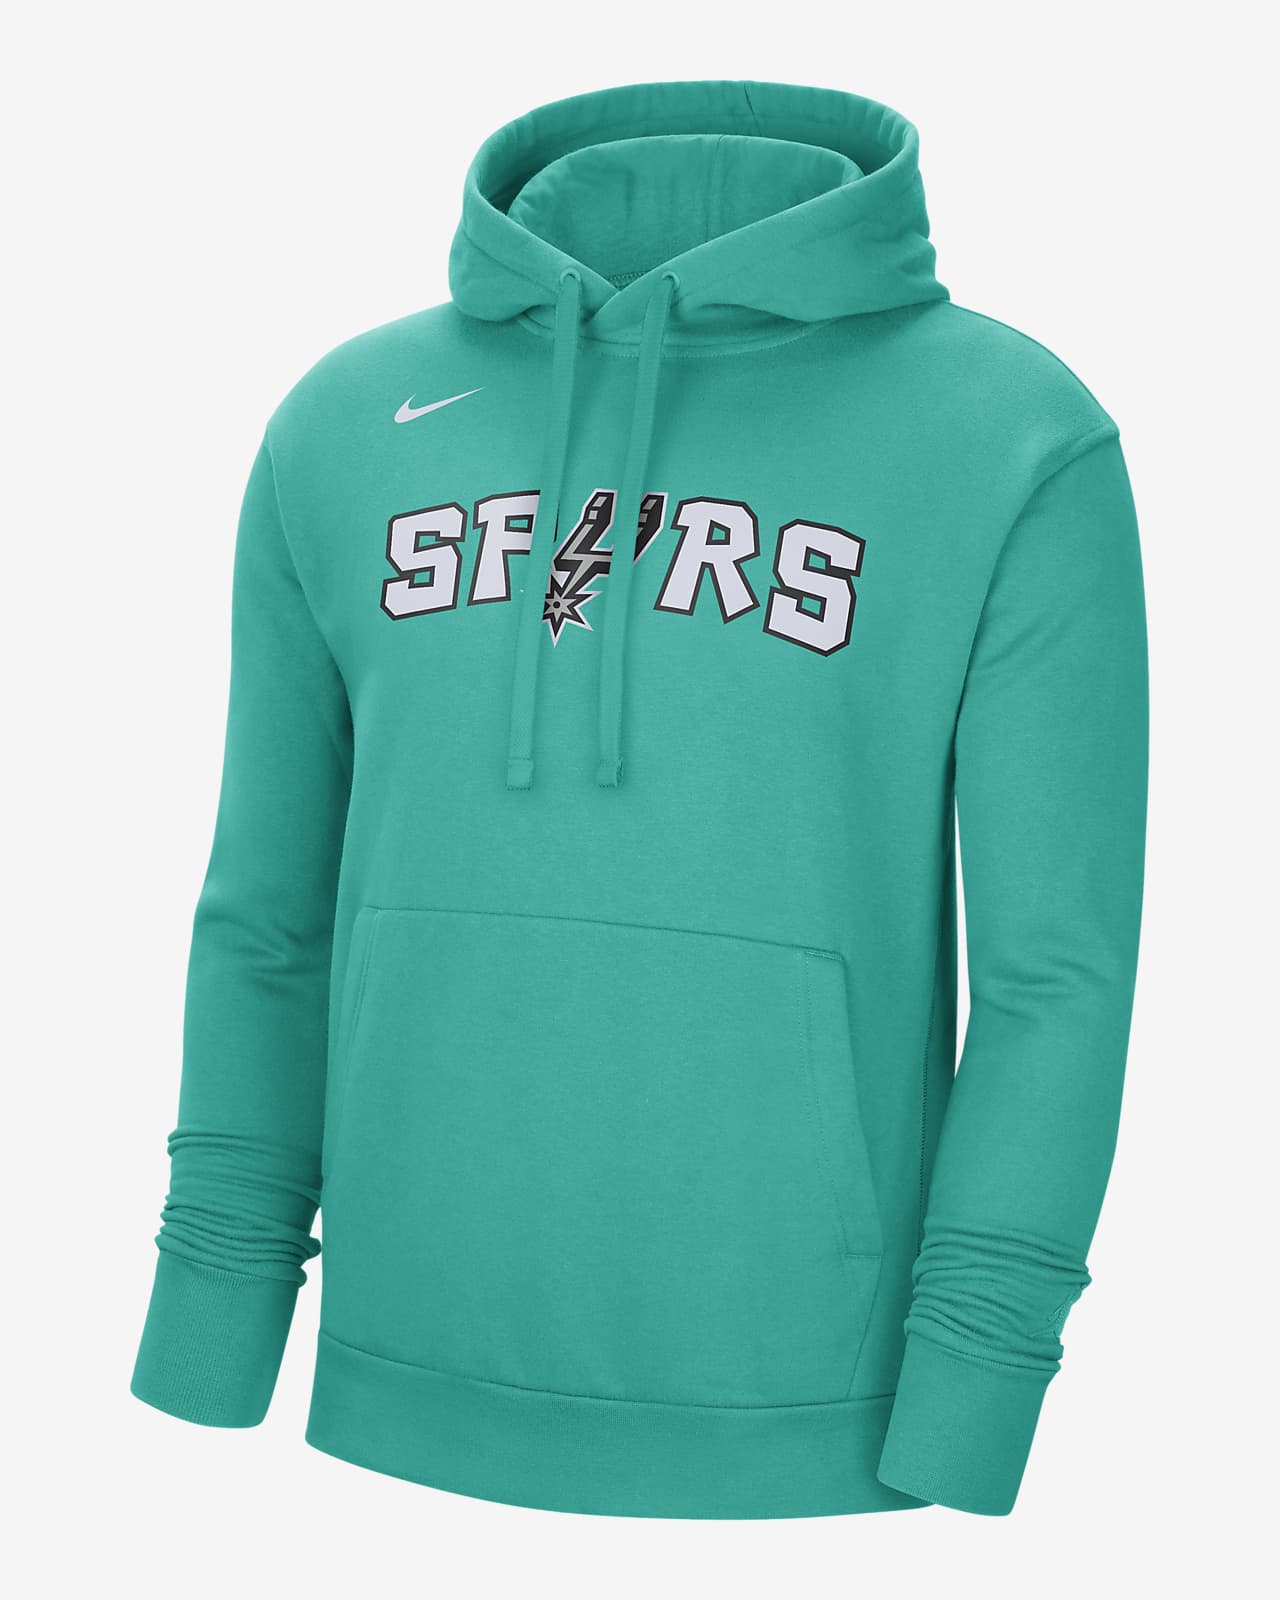 Sudadera con gorro cierre de tejido Fleece Nike de NBA para hombre San Antonio Spurs City Edition. Nike.com